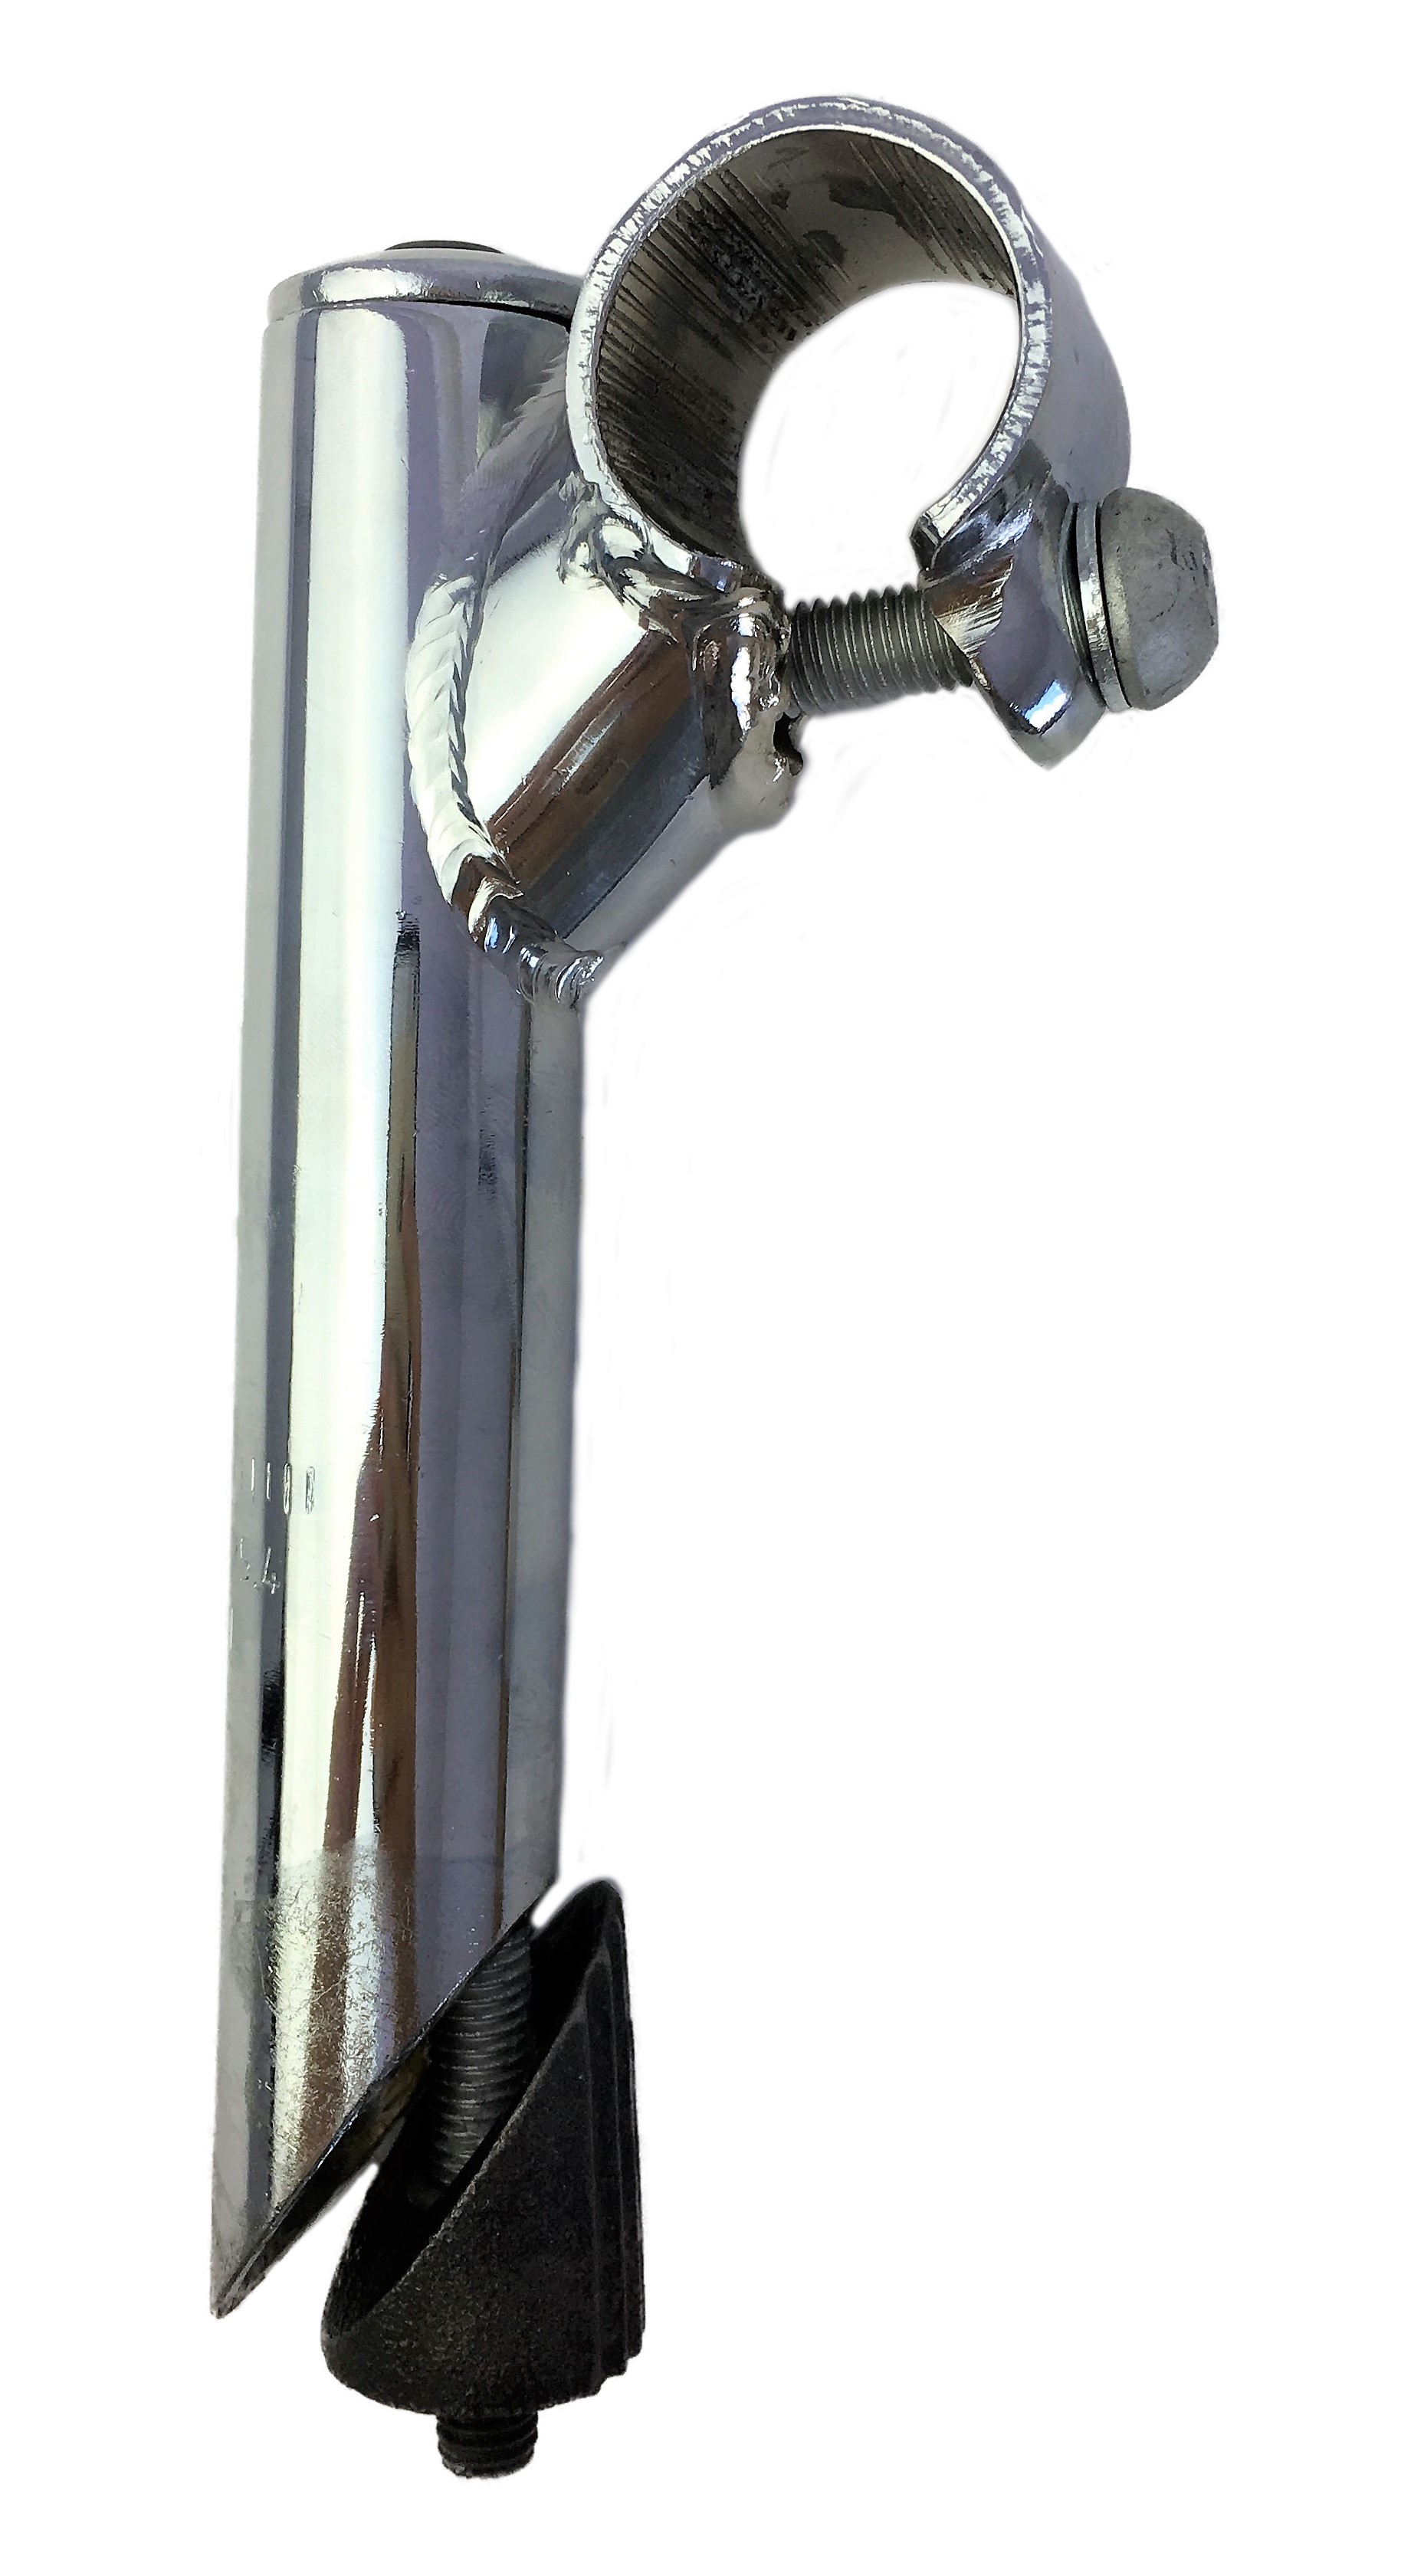 Vorbau 25,4 - 25,4,  40mm, Stahl-Schaft mit 1-Fach Schraubenlenkerklemmung verchromt Humpert Ergotec